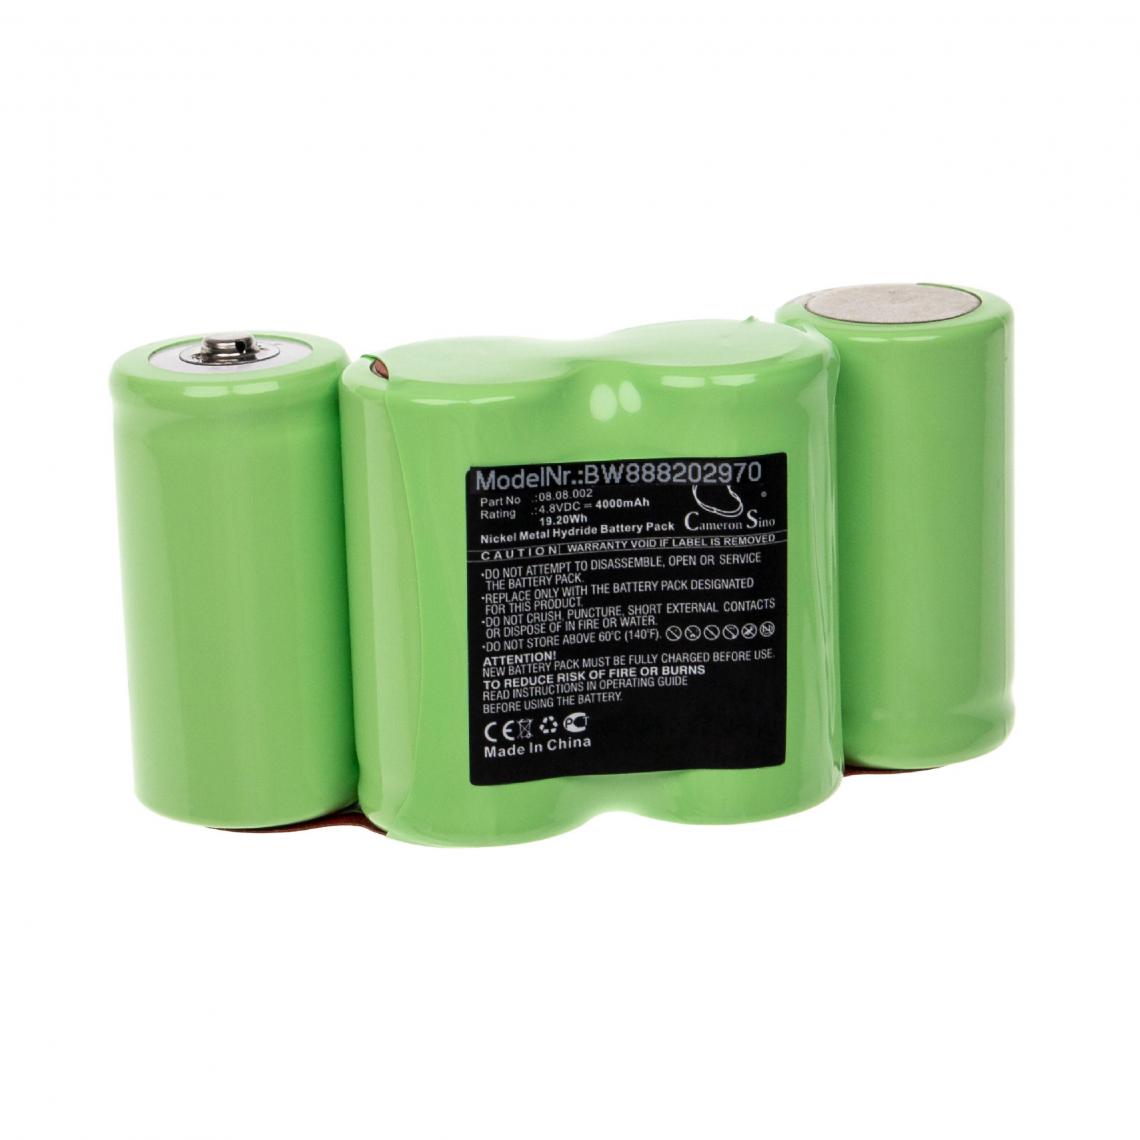 Vhbw - vhbw Batterie compatible avec Theis TAL Evolution (200), TAL S outil de mesure (4000mAh, 4,8V, NiMH) - Piles rechargeables